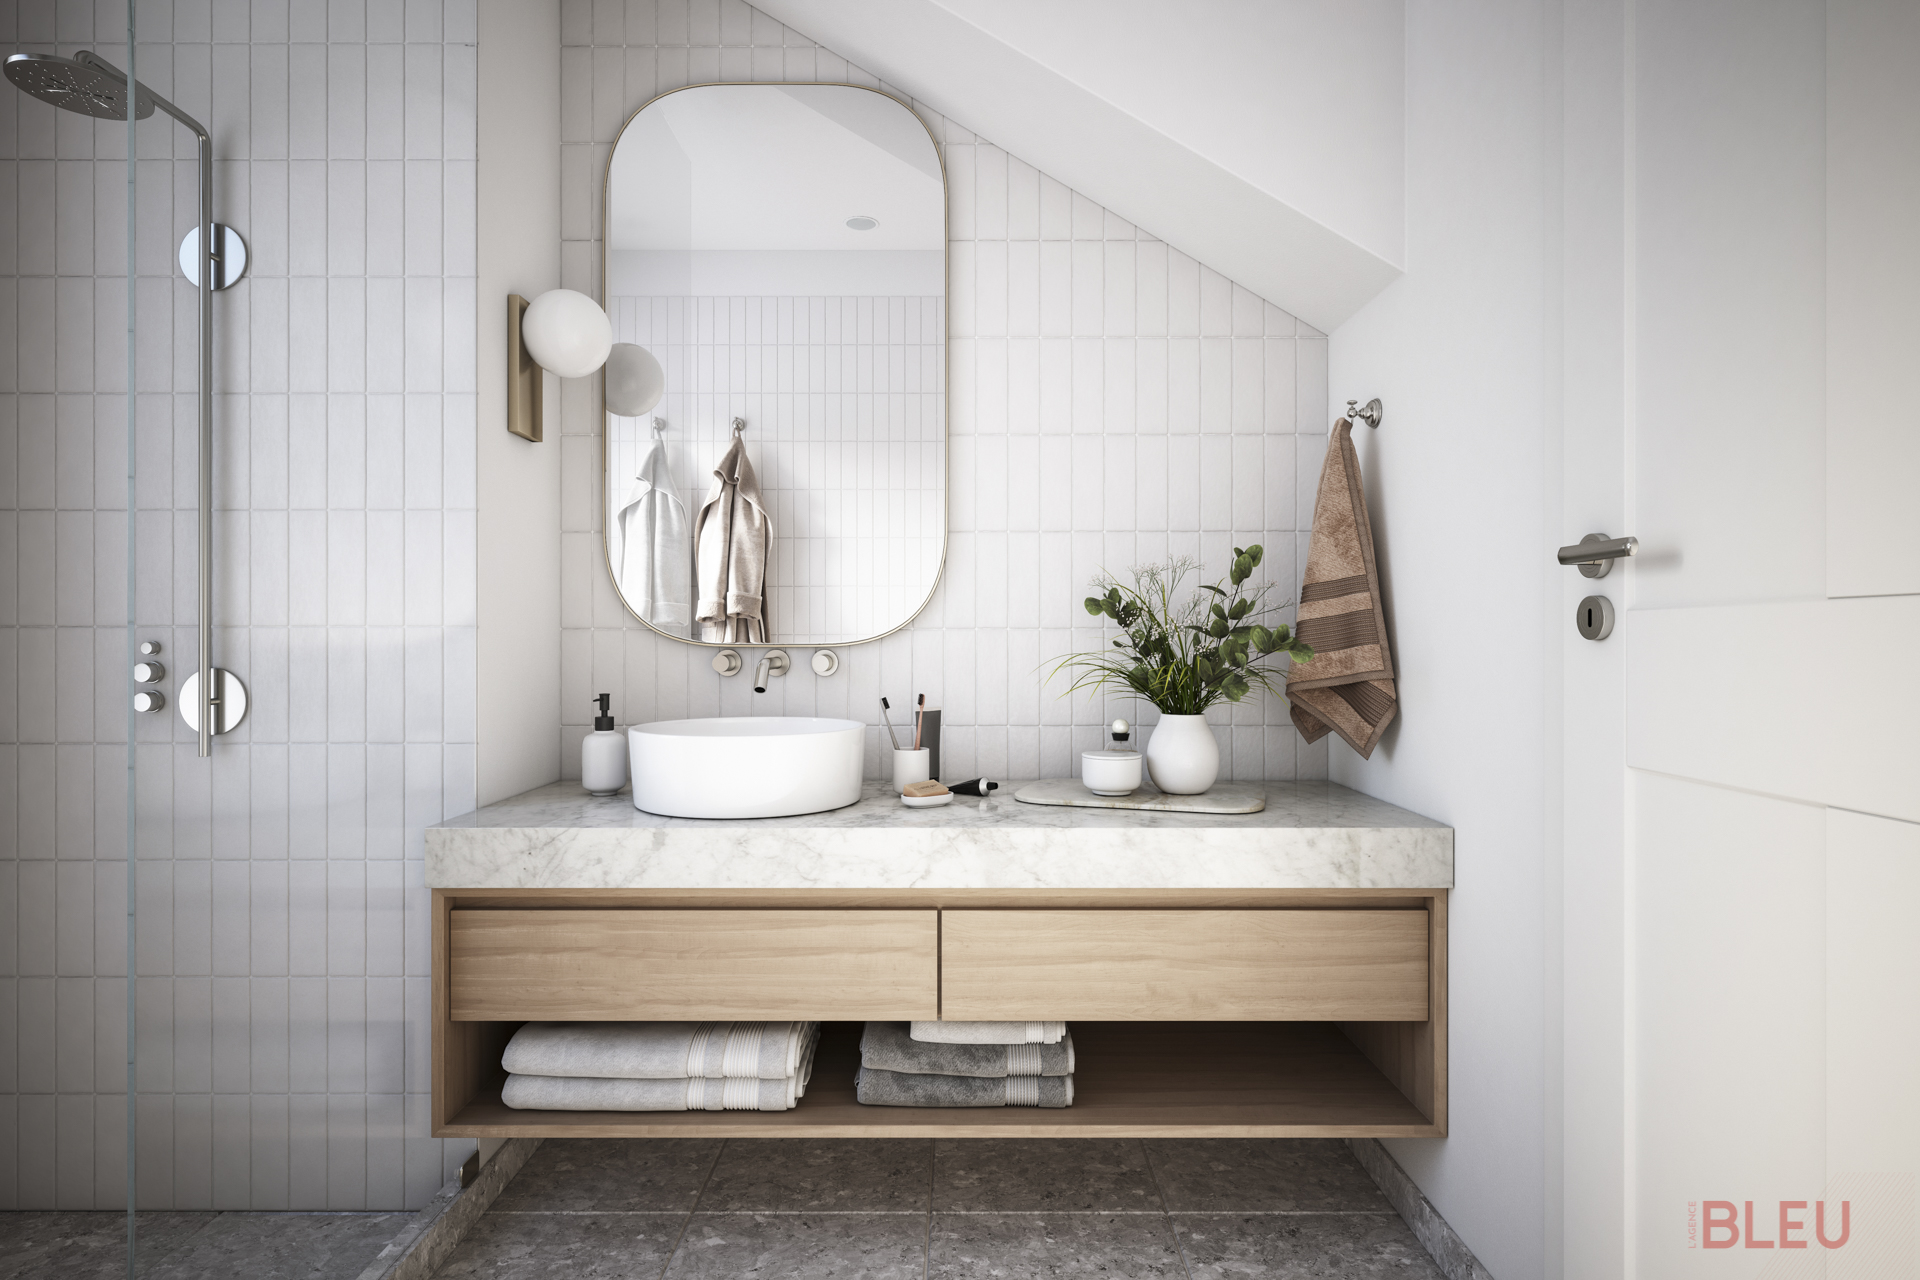 Rénovation salle de bain Paris : La salle de bain est une pièce appréciée des Français. Que vous souhaitiez l'améliorer ou la rendre plus agréable avec de nouveaux meubles, suivez ces conseils pour éviter les erreurs de rénovation et créer un espace de vie plaisant et bien conçu.